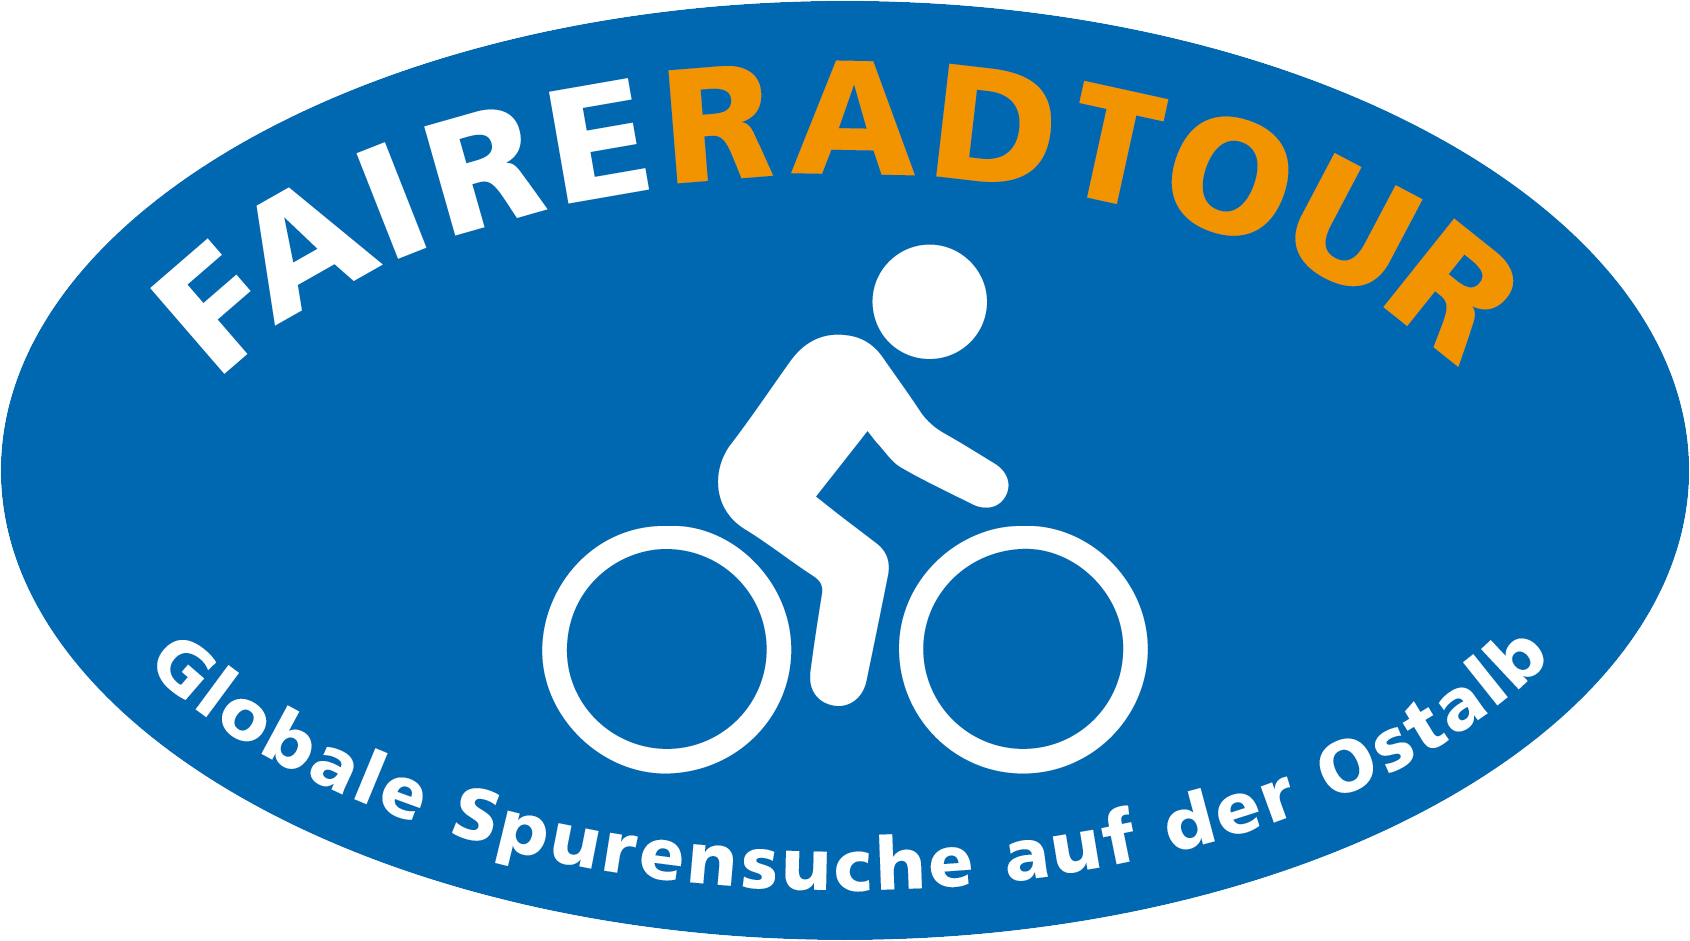 Faire Radtour Ostalb